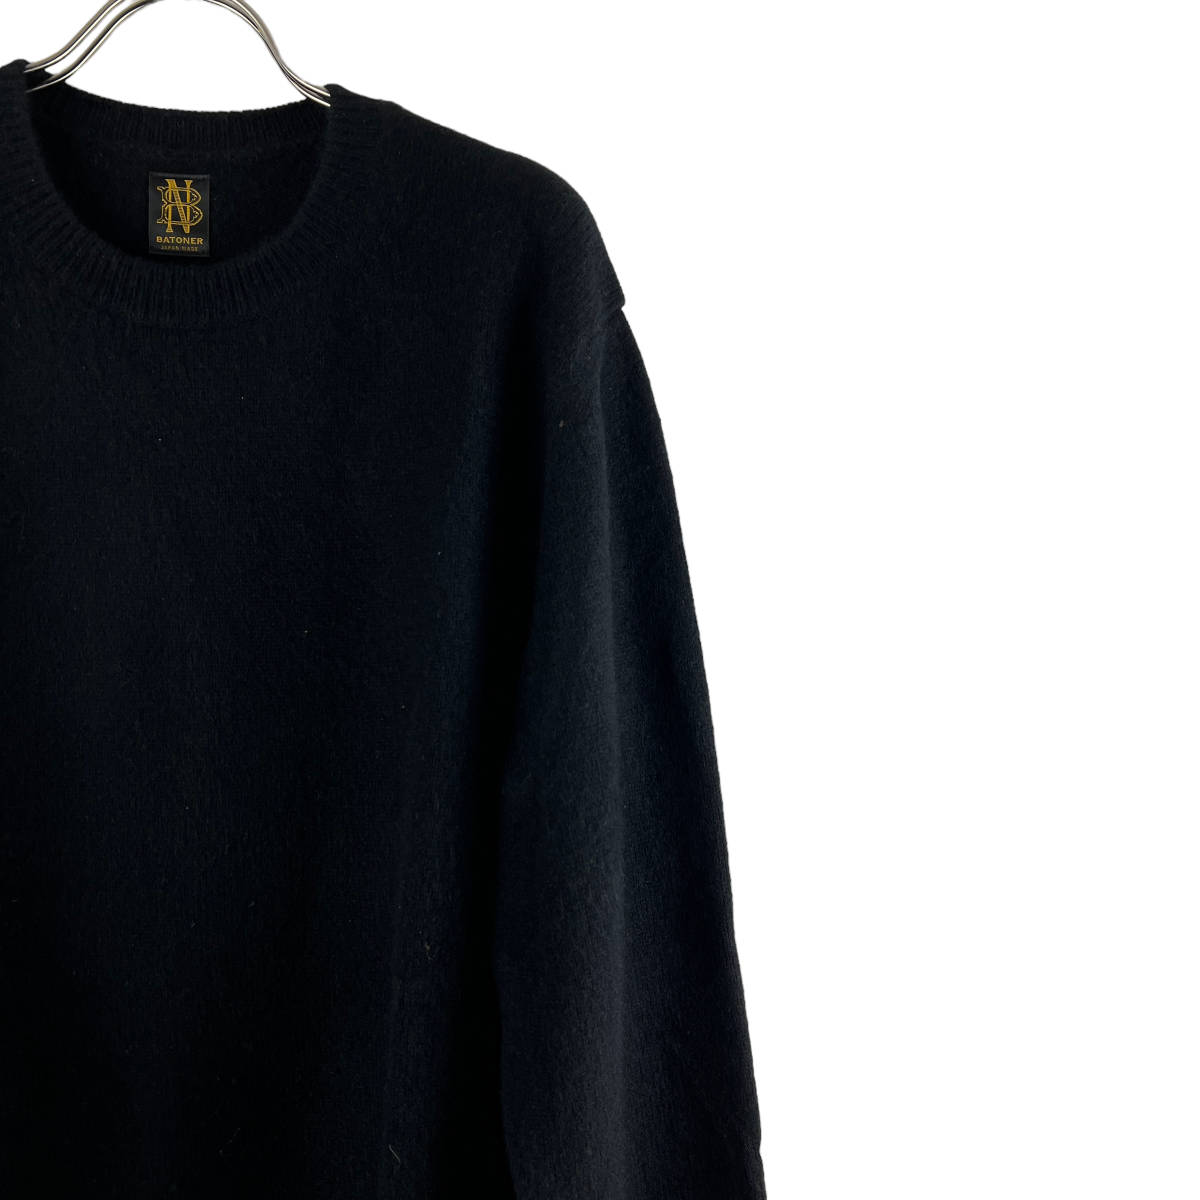 BATONER(バトナー) Casual Wearing Longsleeve Knit T Shirt (black)_画像3